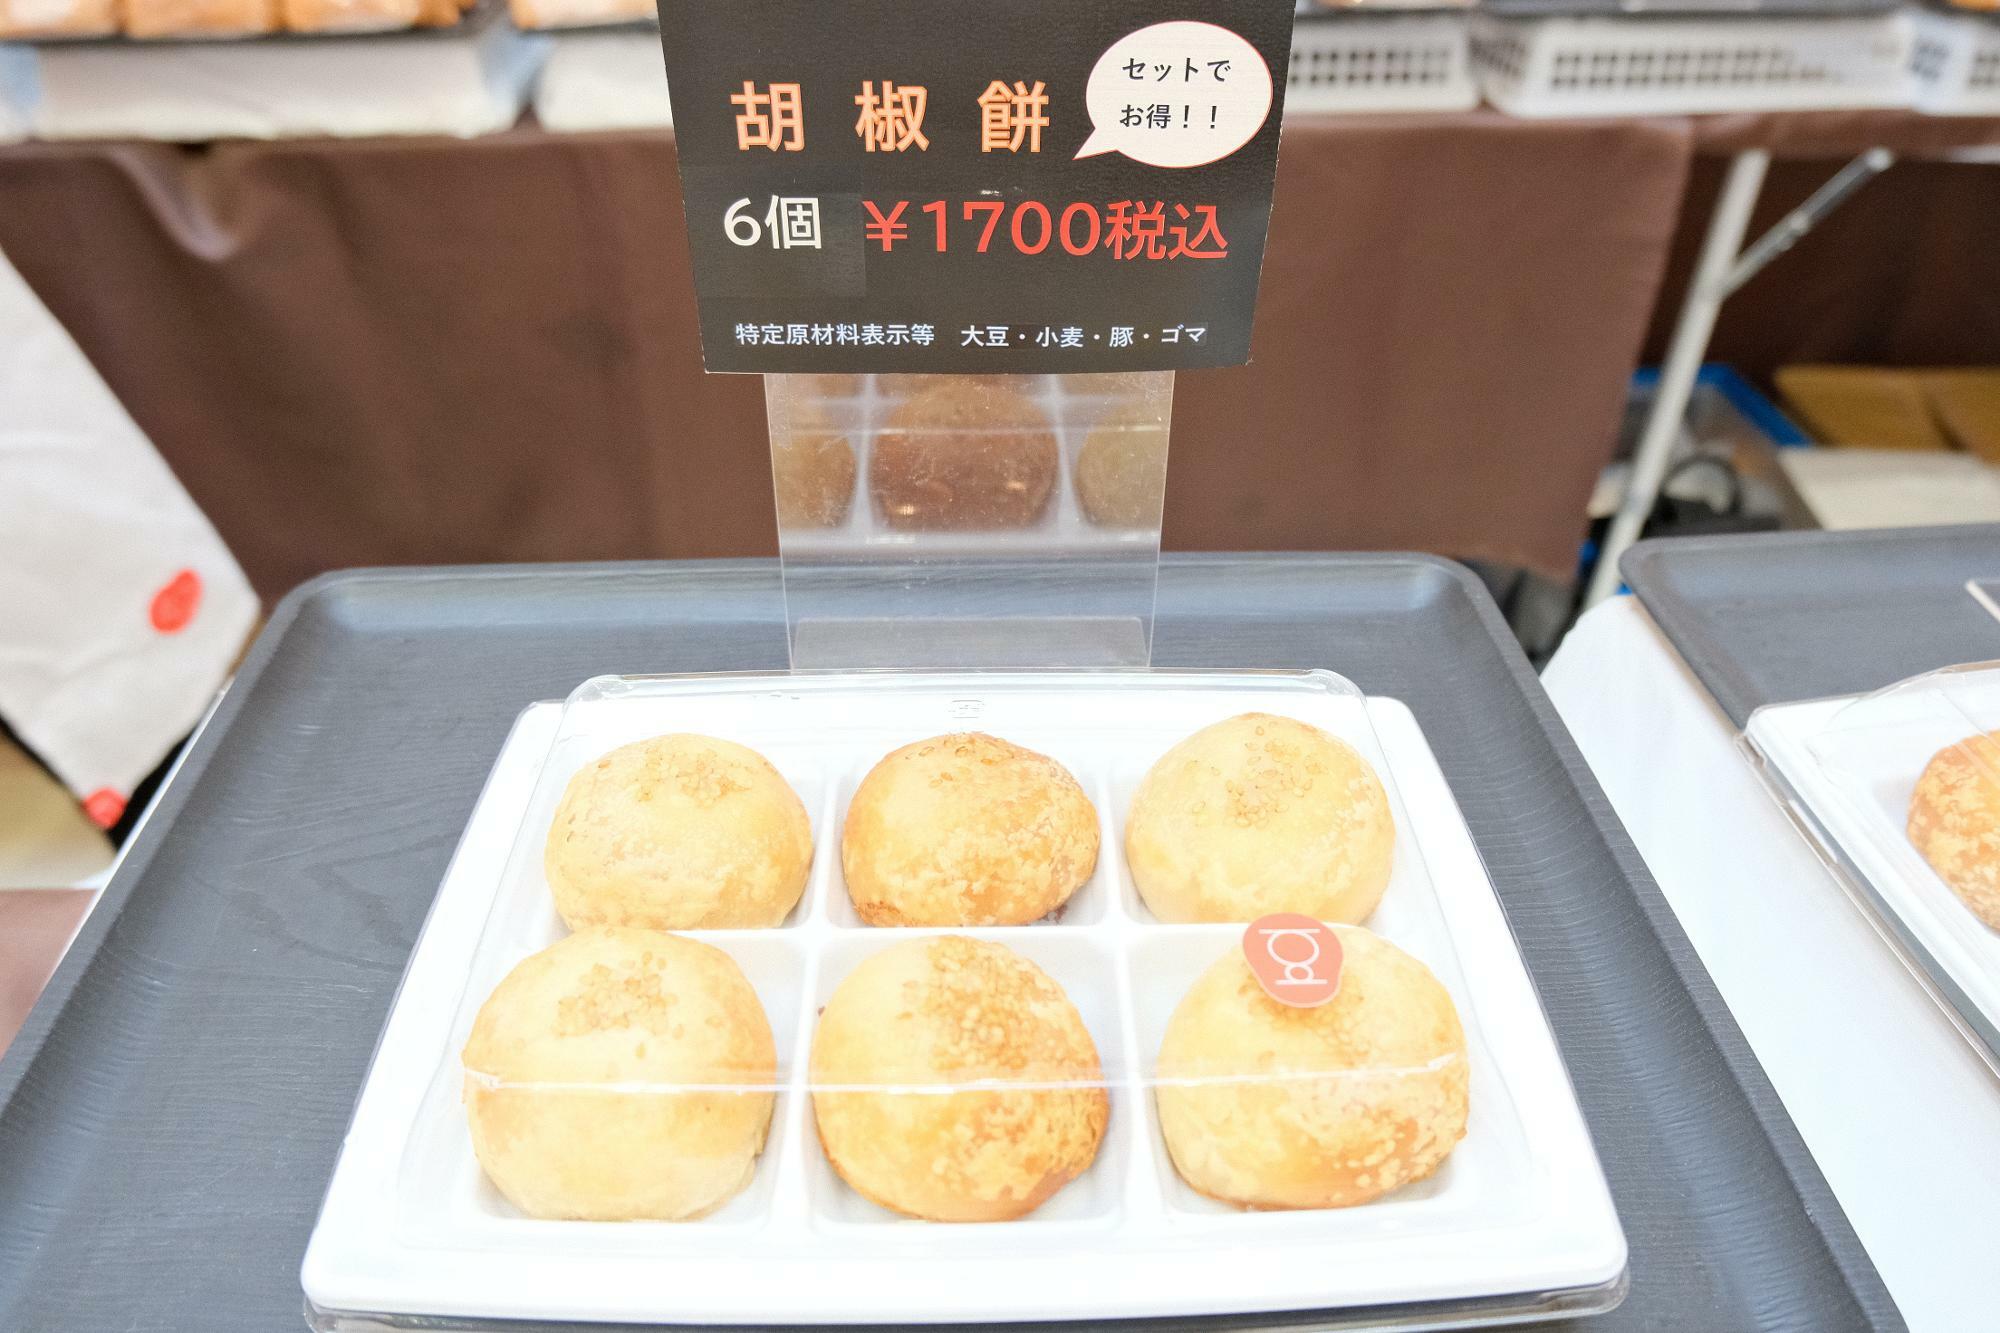 「胡椒餅」6個(1700円税込)